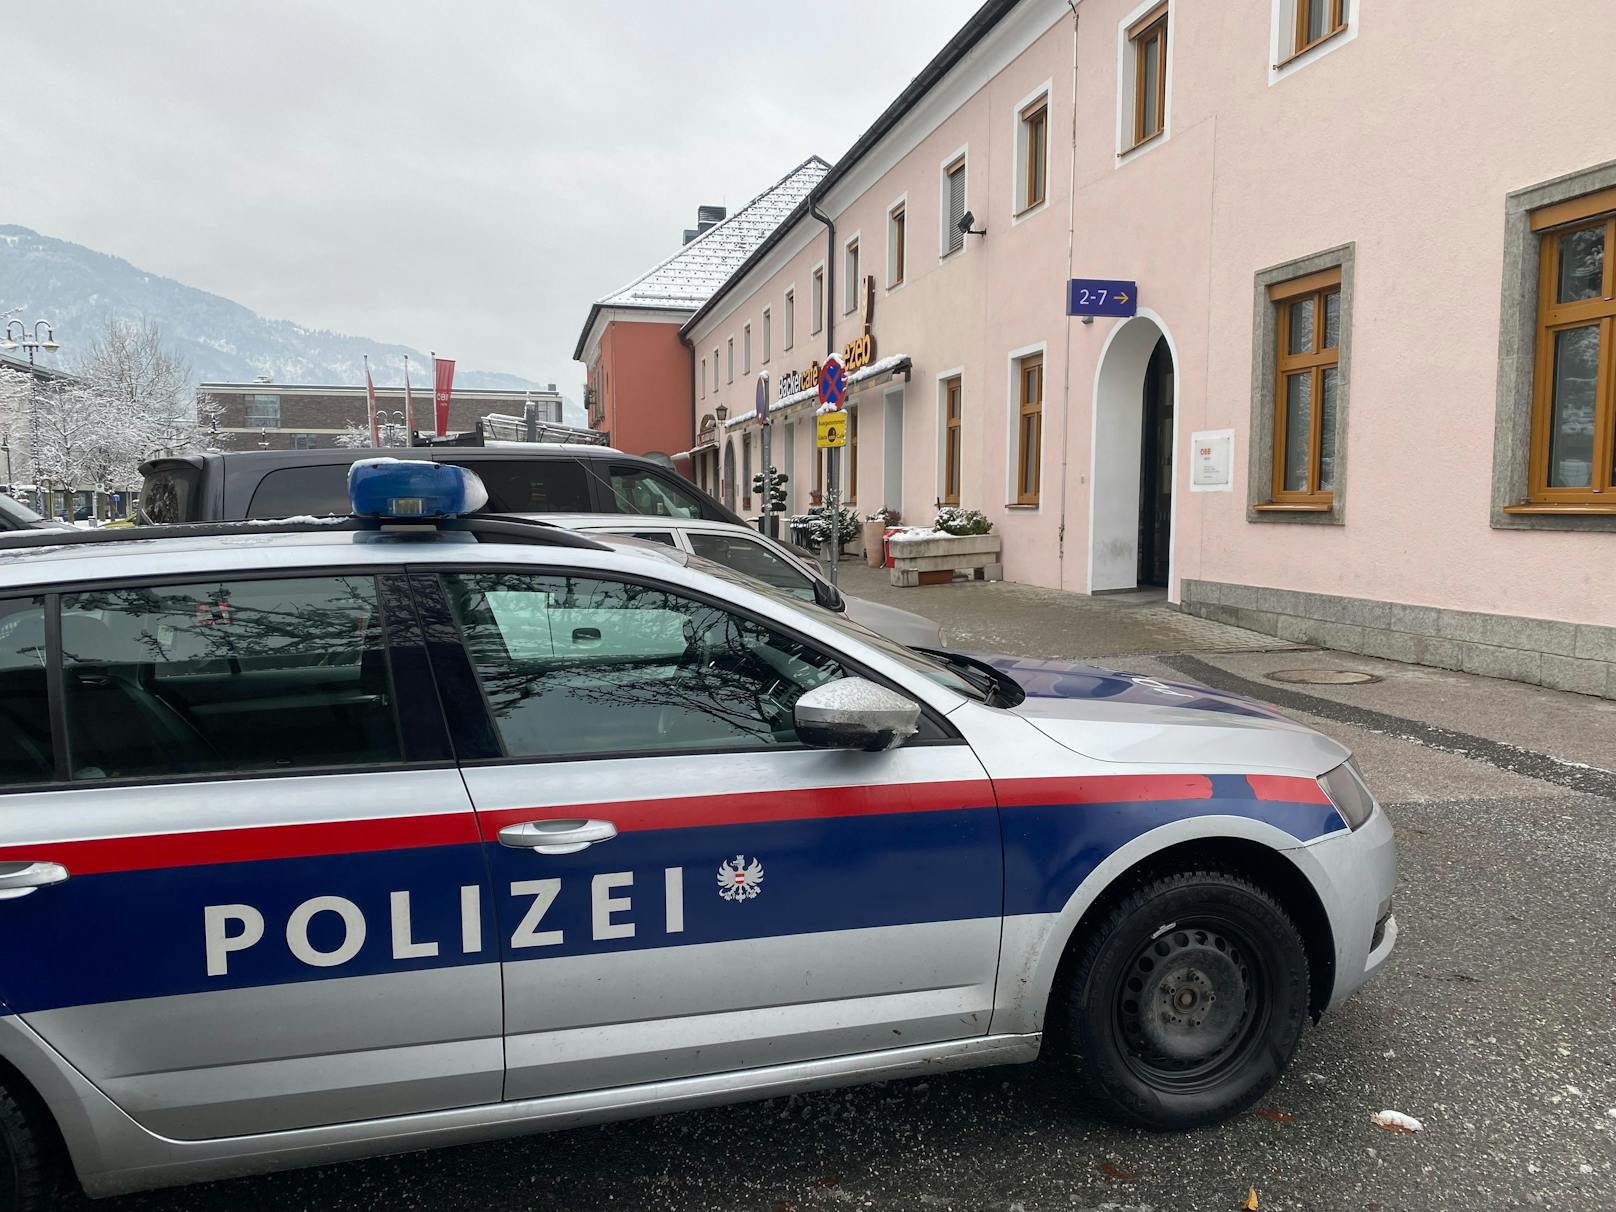 Polizeieinsatz am Freitag in Wörgl! Ein junger Mann hatte am Bahnhof zu randalieren begonnen und dabei mehrere Infopoint-Monitore beschädigt.